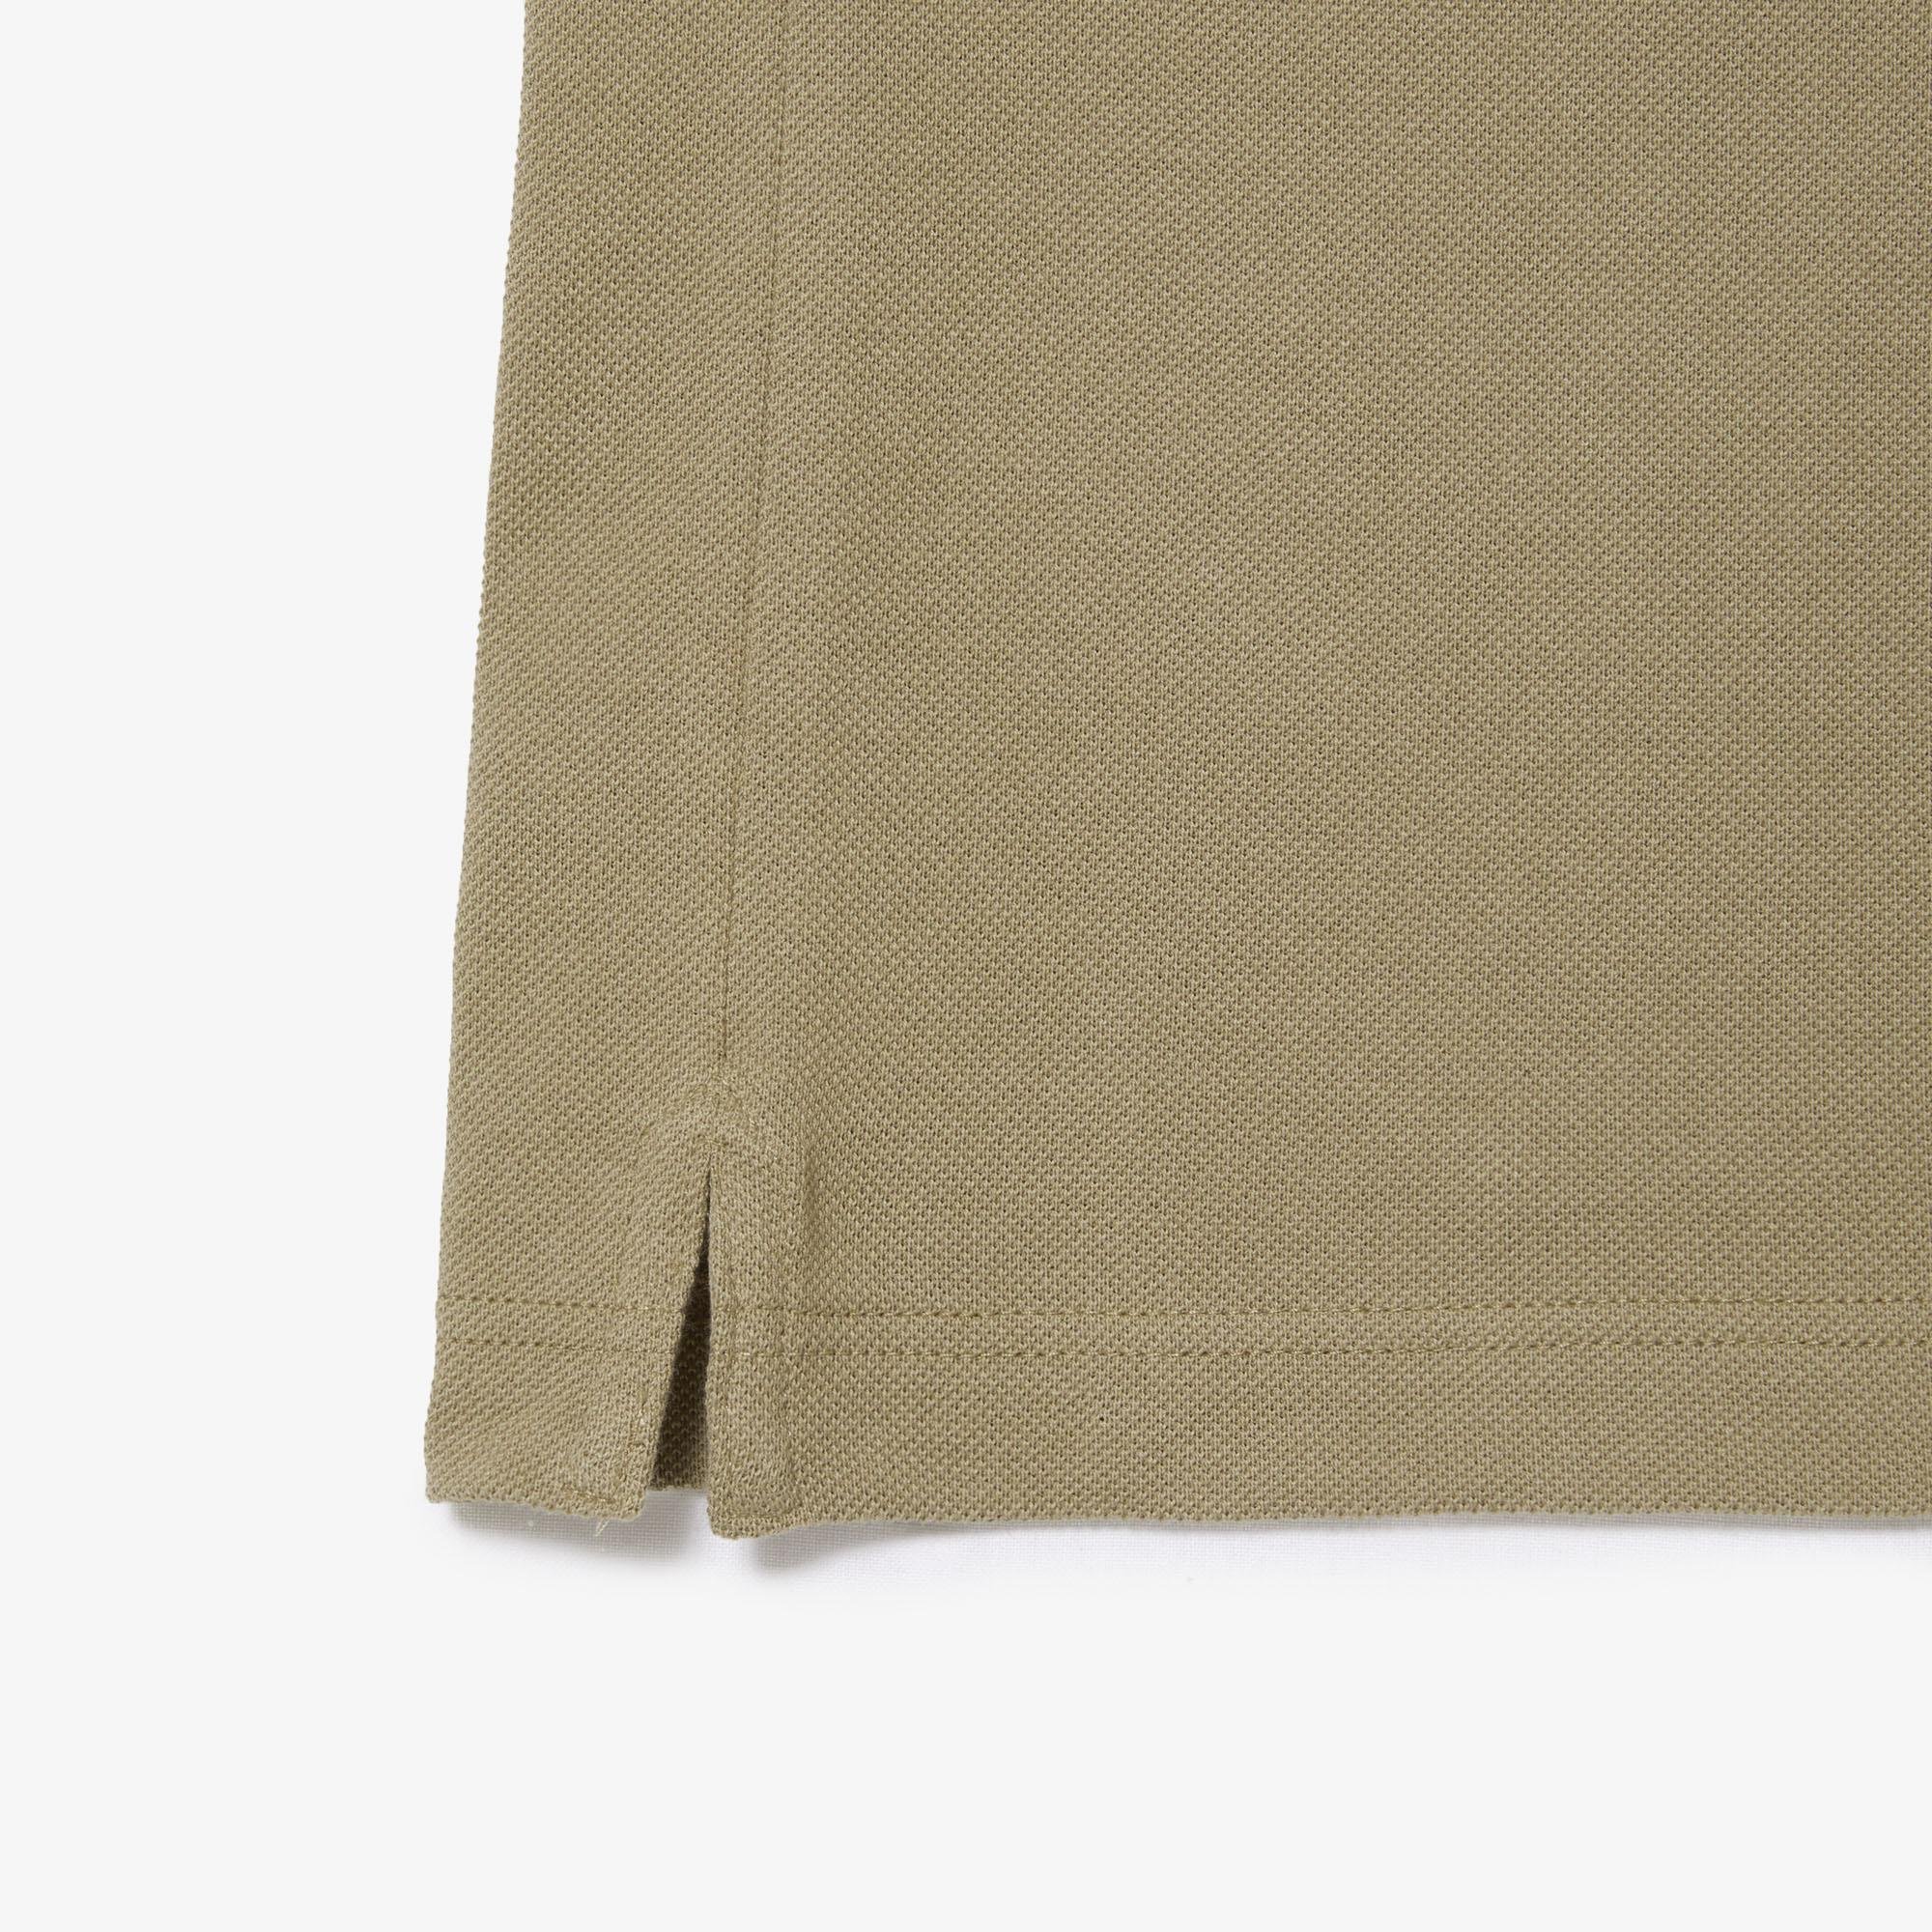 Lacoste Original L.12.12 Slim Fit Petit Piqué Cotton Polo Shirt